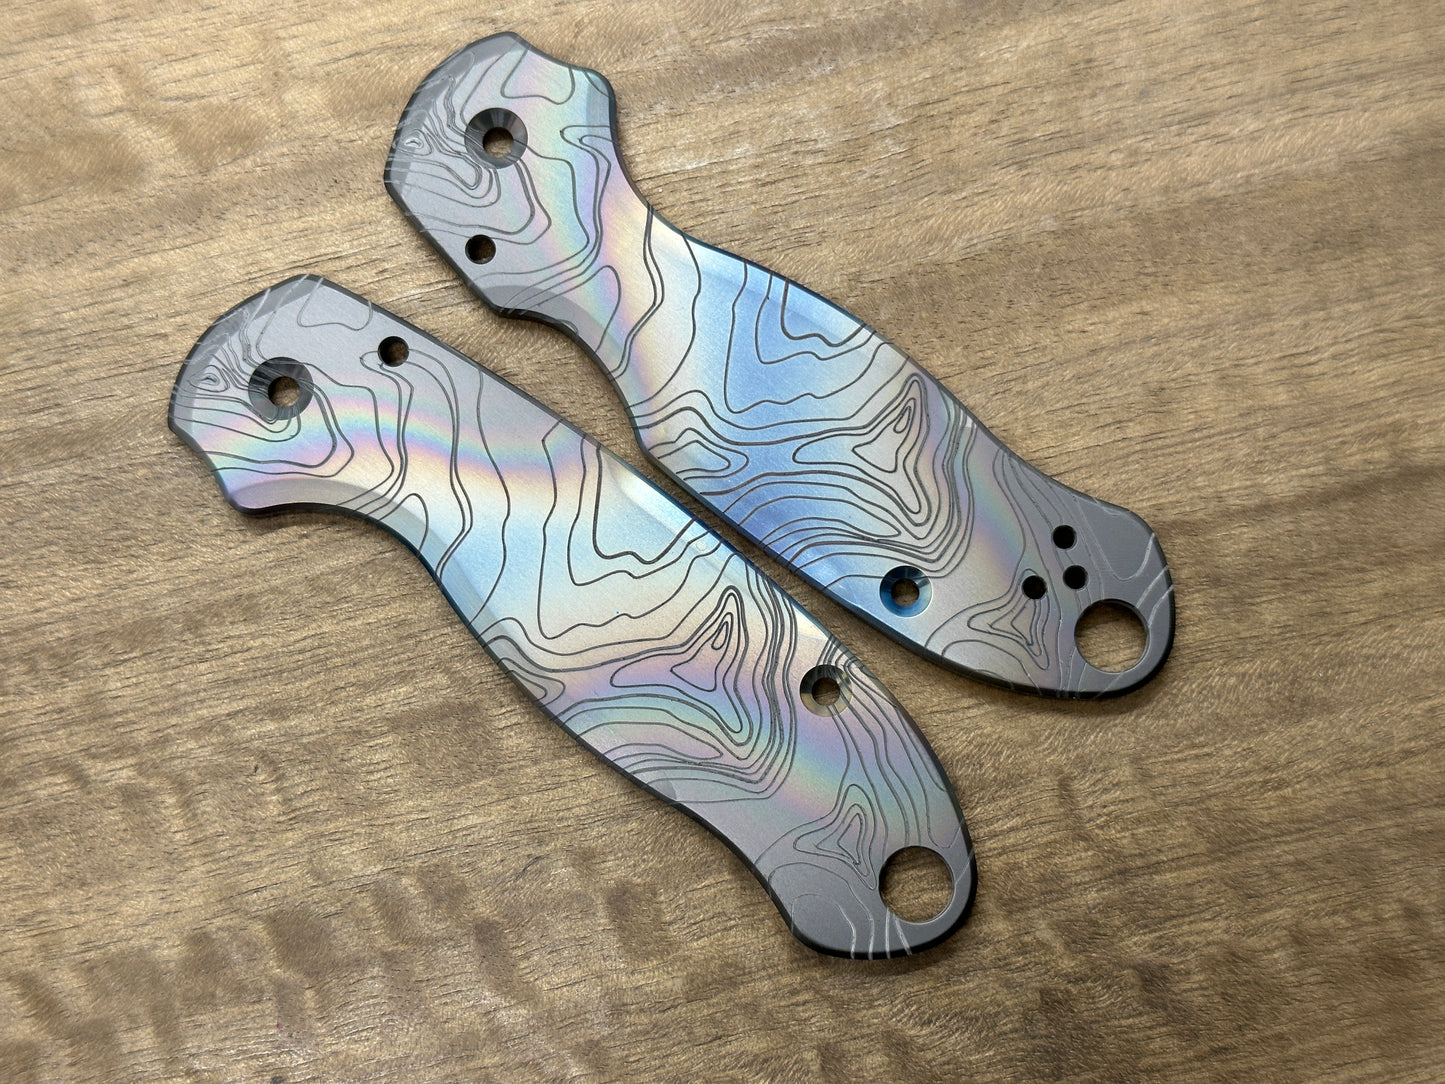 TOPO Rainbow engraved Zirconium Scales for Spyderco Para 3